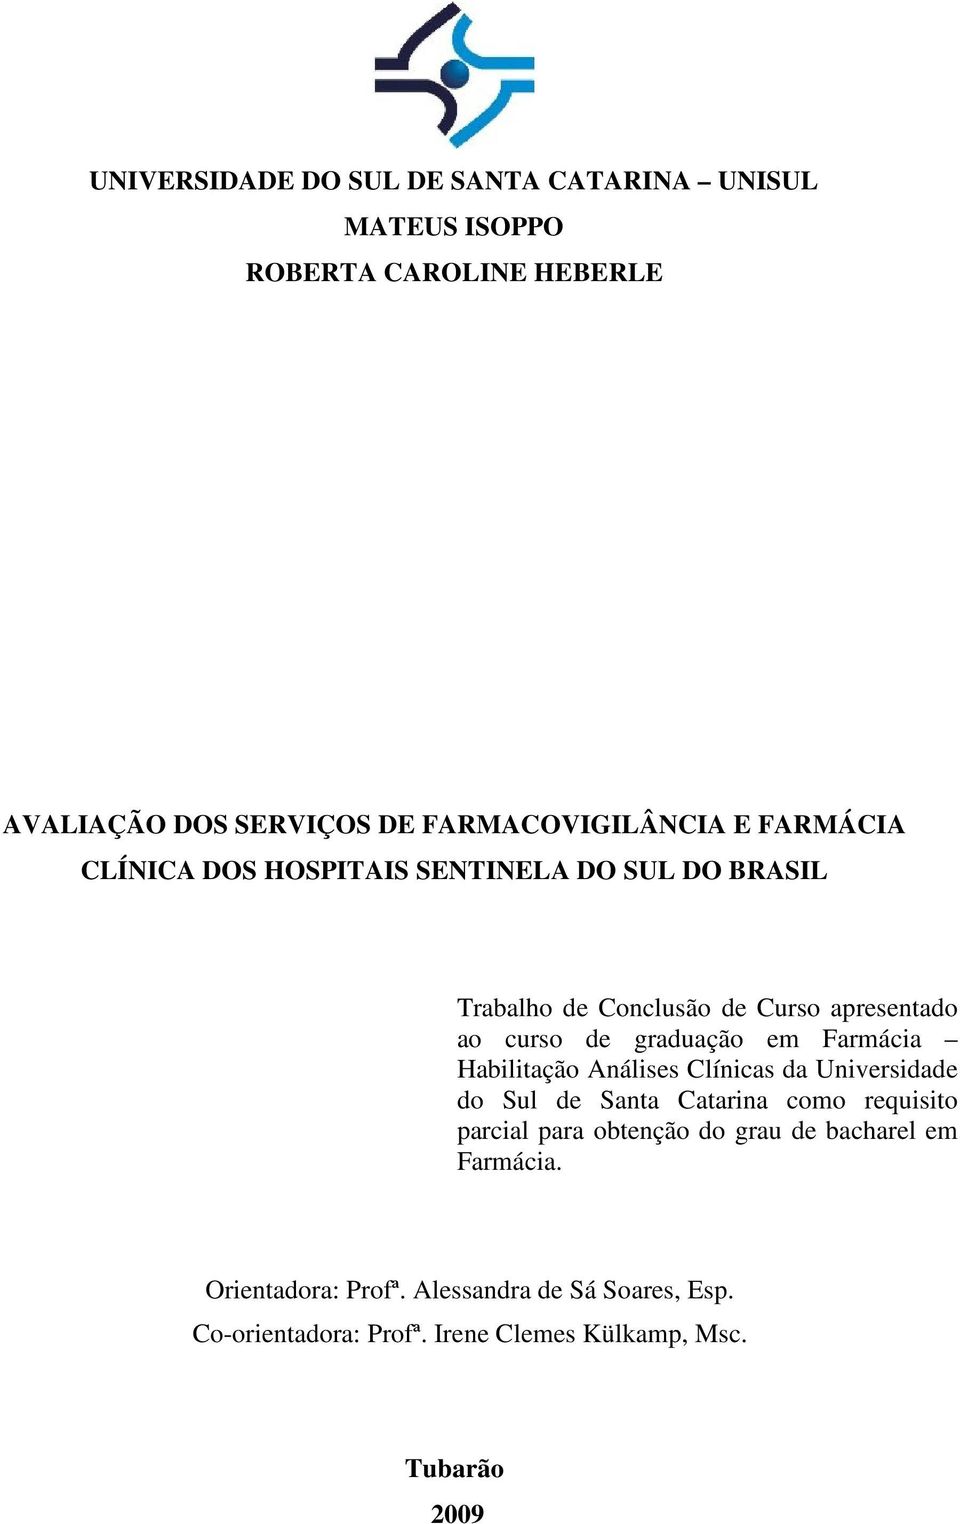 Farmácia Habilitação Análises Clínicas da Universidade do Sul de Santa Catarina como requisito parcial para obtenção do grau de